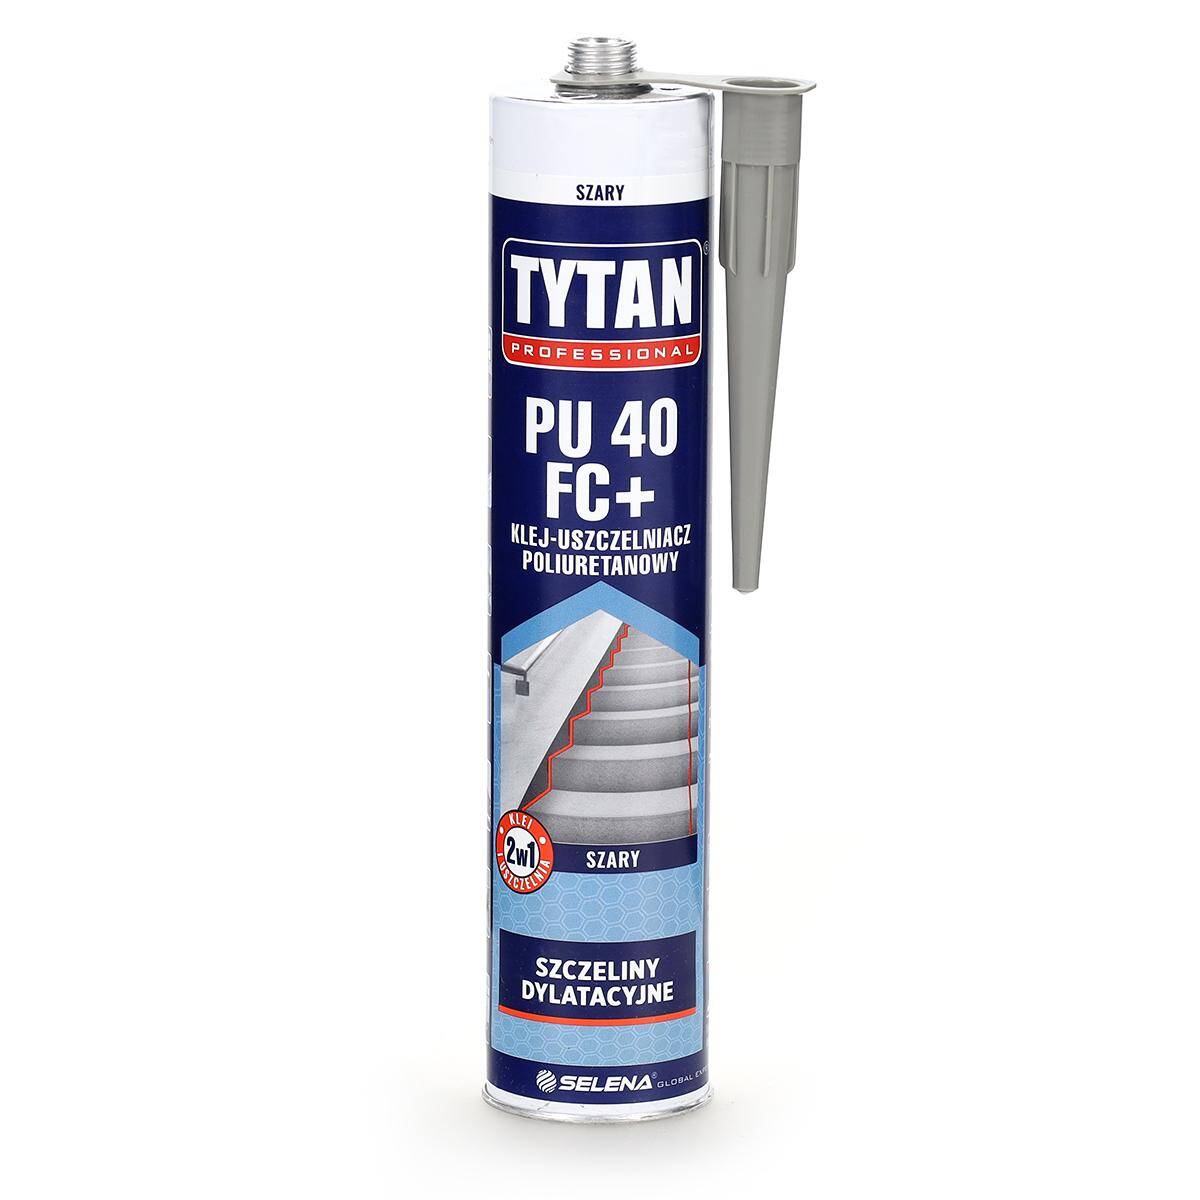 Klej Uszczelniacz poliuretanowy PU40 FC+ 300 ml szary TYTAN Professional